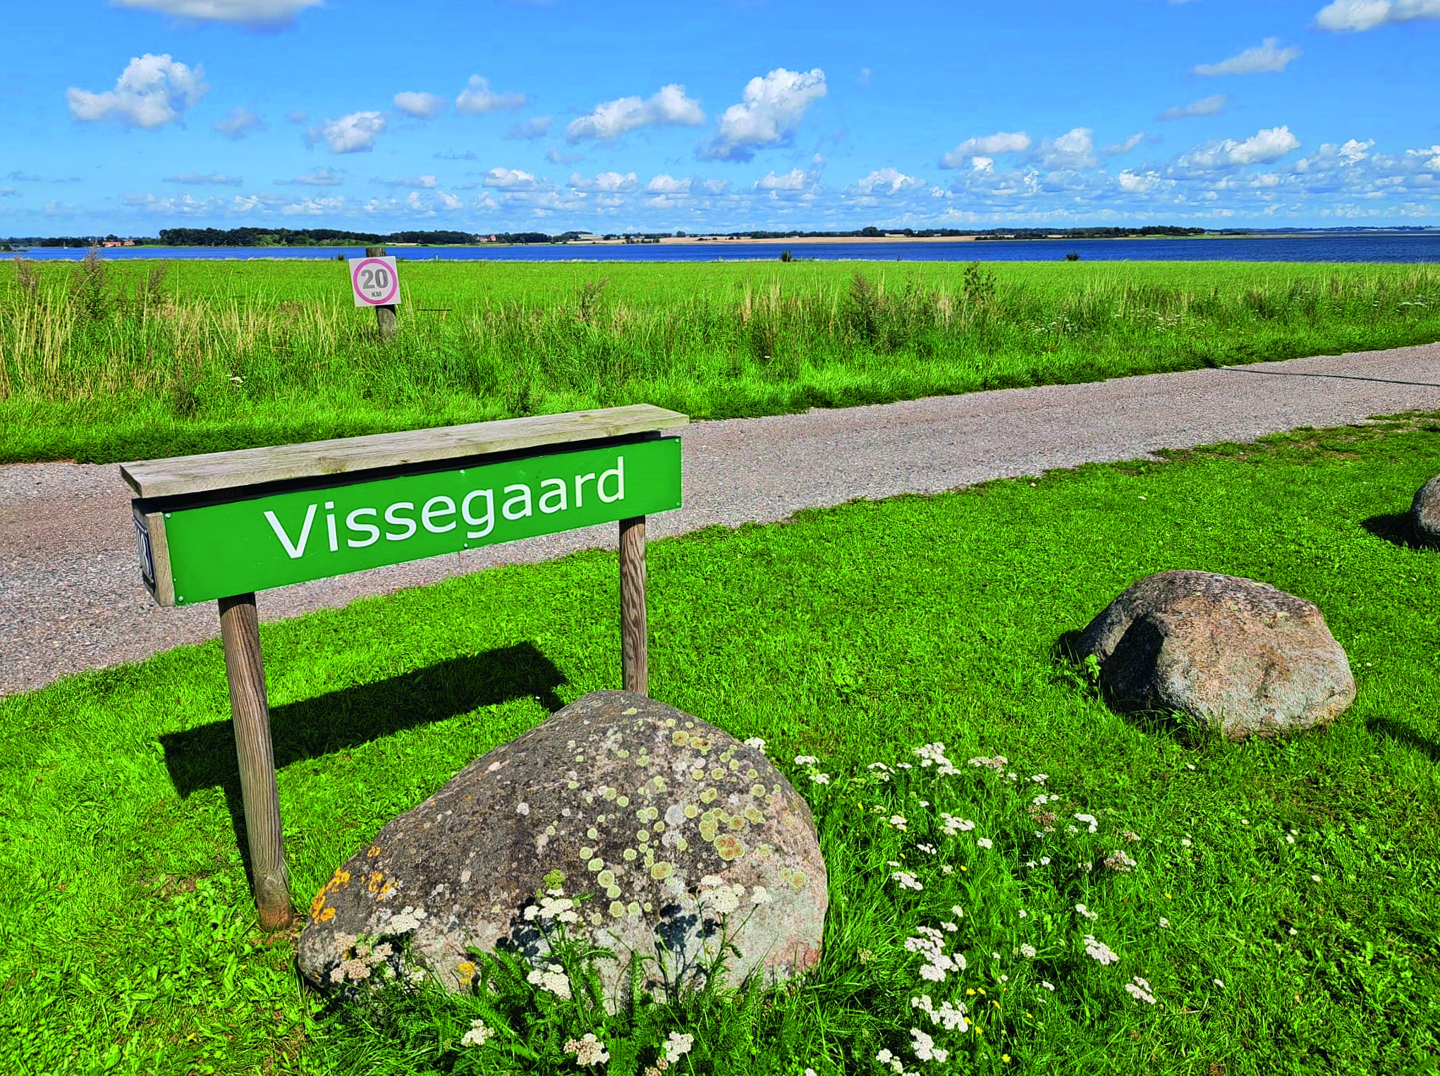 H Straatnamen in Gersjøh zoals Krabbeholm (krabbeneiland) herinneren aan een rijke visserijhistorie.